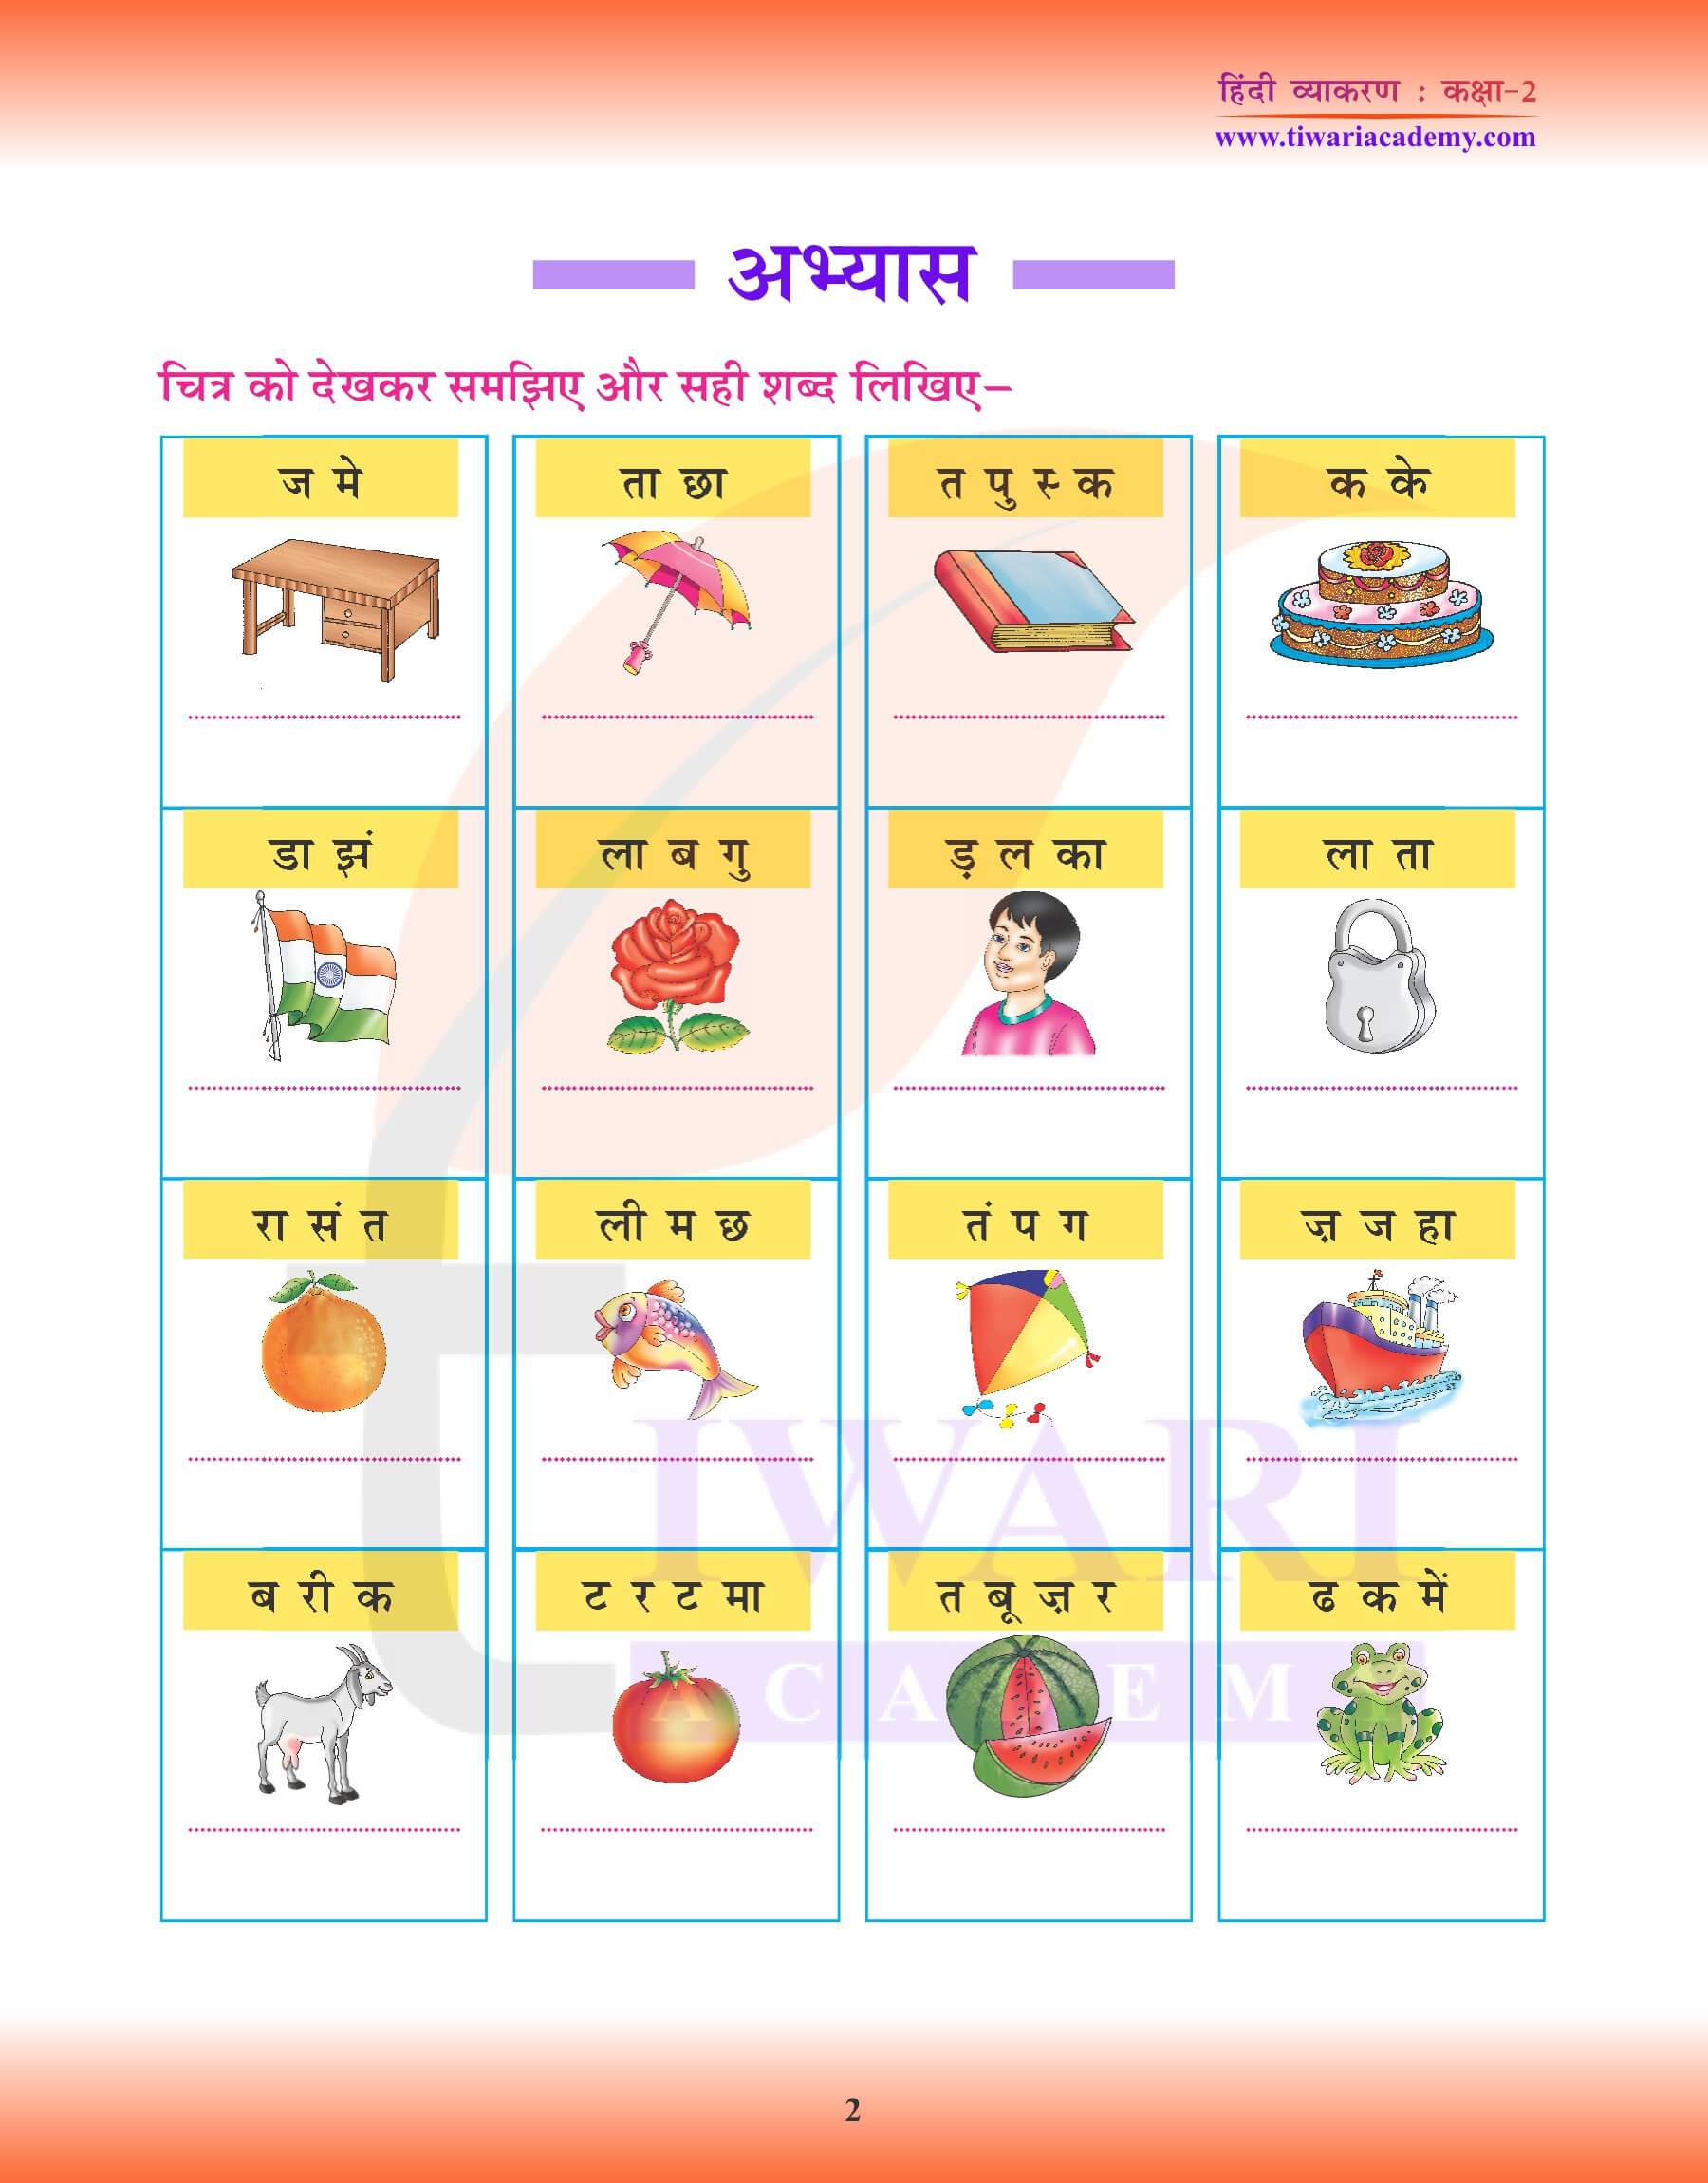 कक्षा 2 हिंदी व्याकरण में शब्द तथा वाक्य